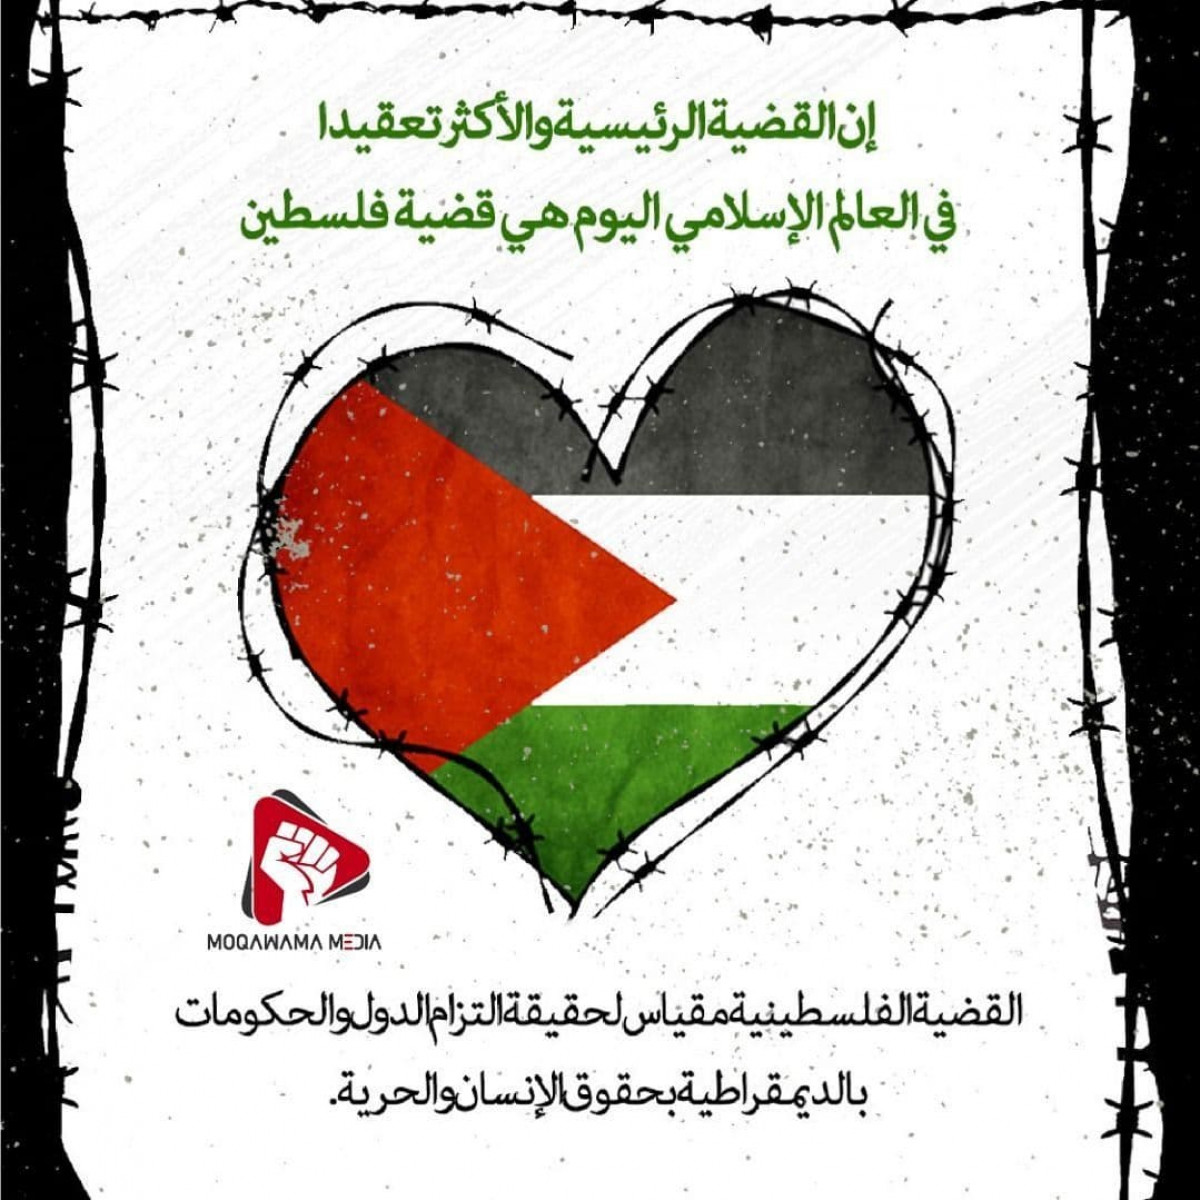 ان القضية الرئيسية و الاكثر تعقيدا في العالم الاسلامي اليوم هي قضية فلسطين